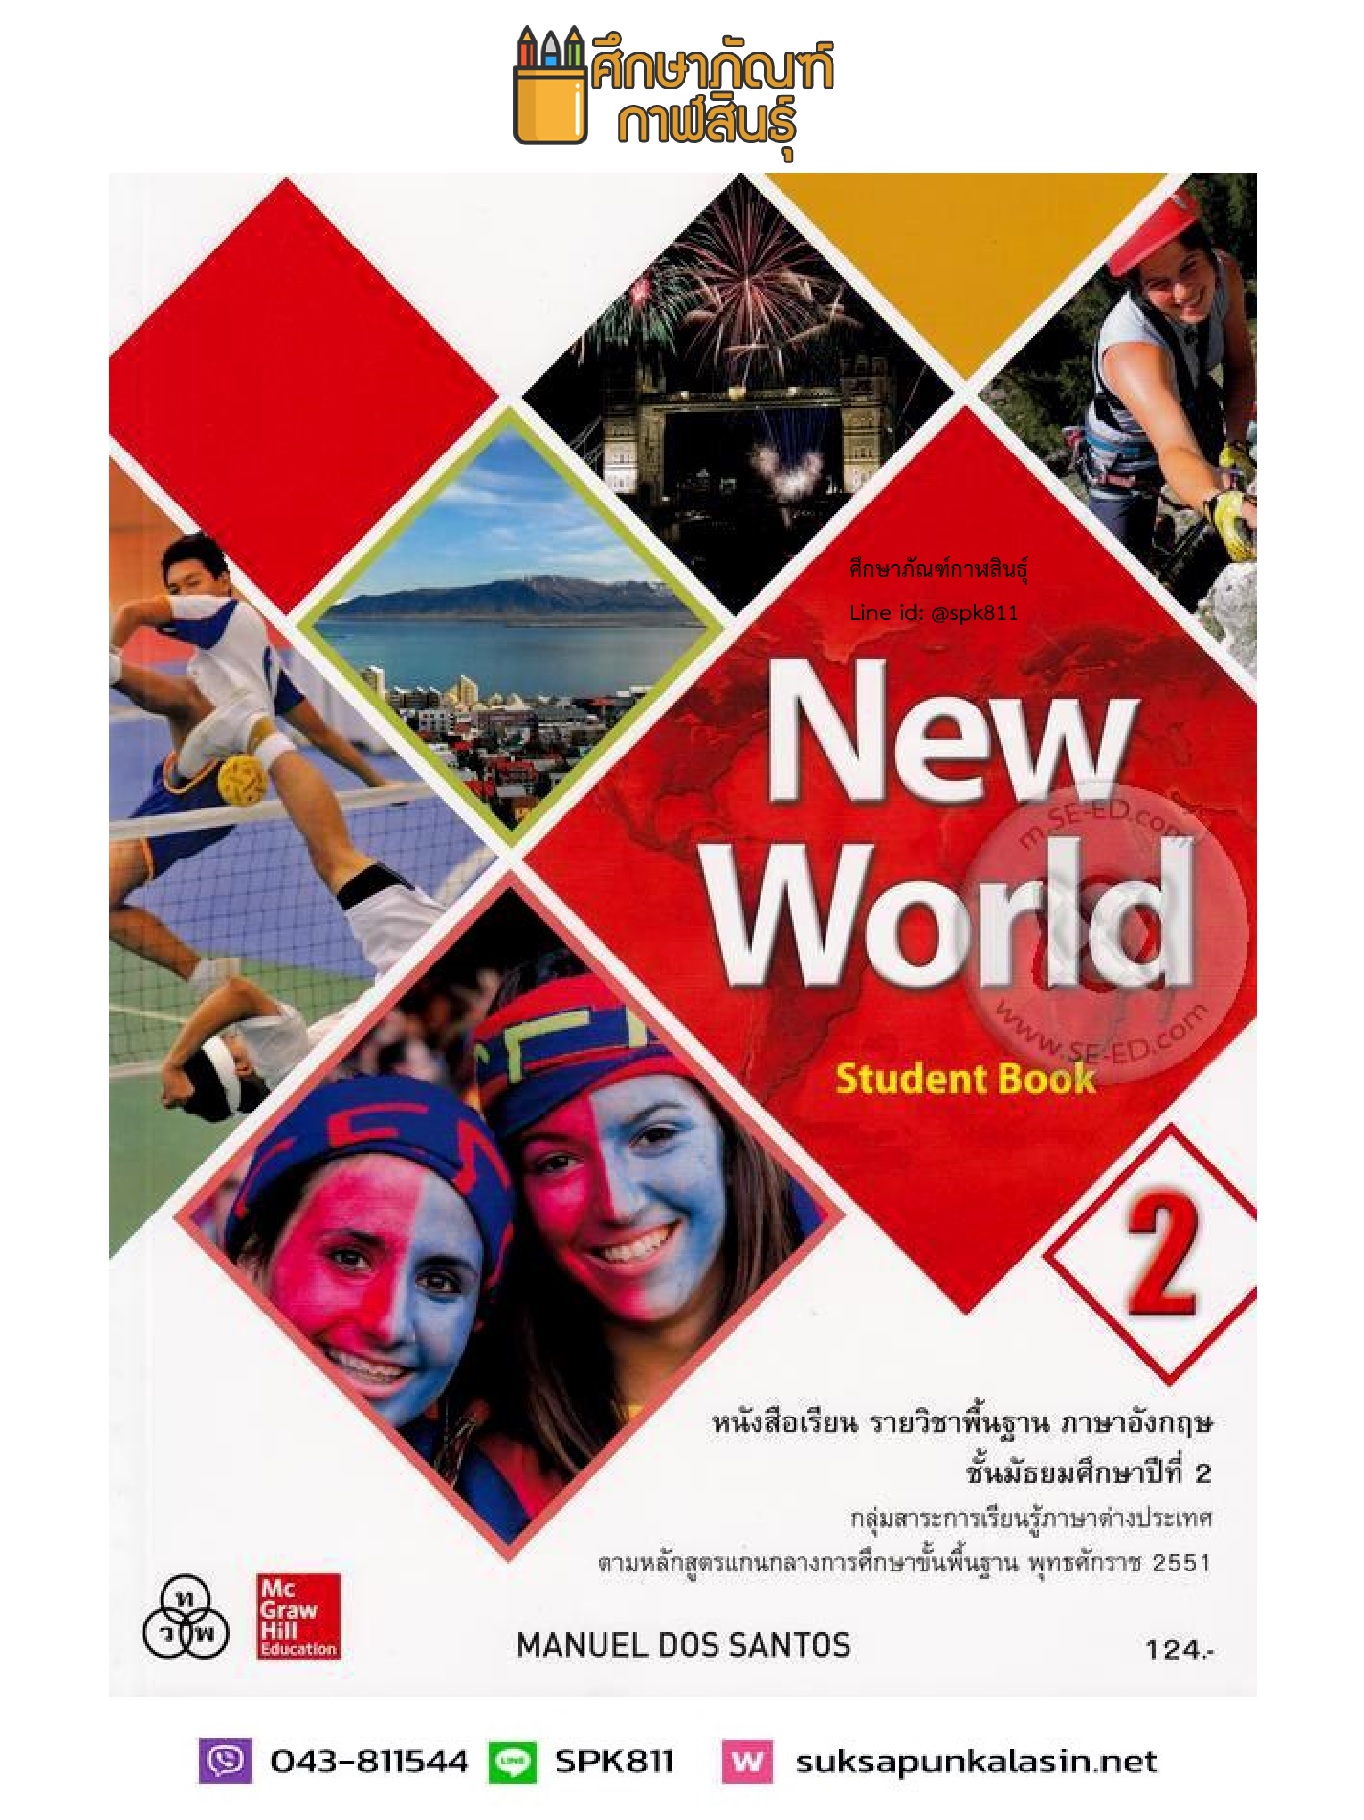 New World Student Book ม.2 (ทวพ) หนังสือเรียน ภาษาอังกฤษ